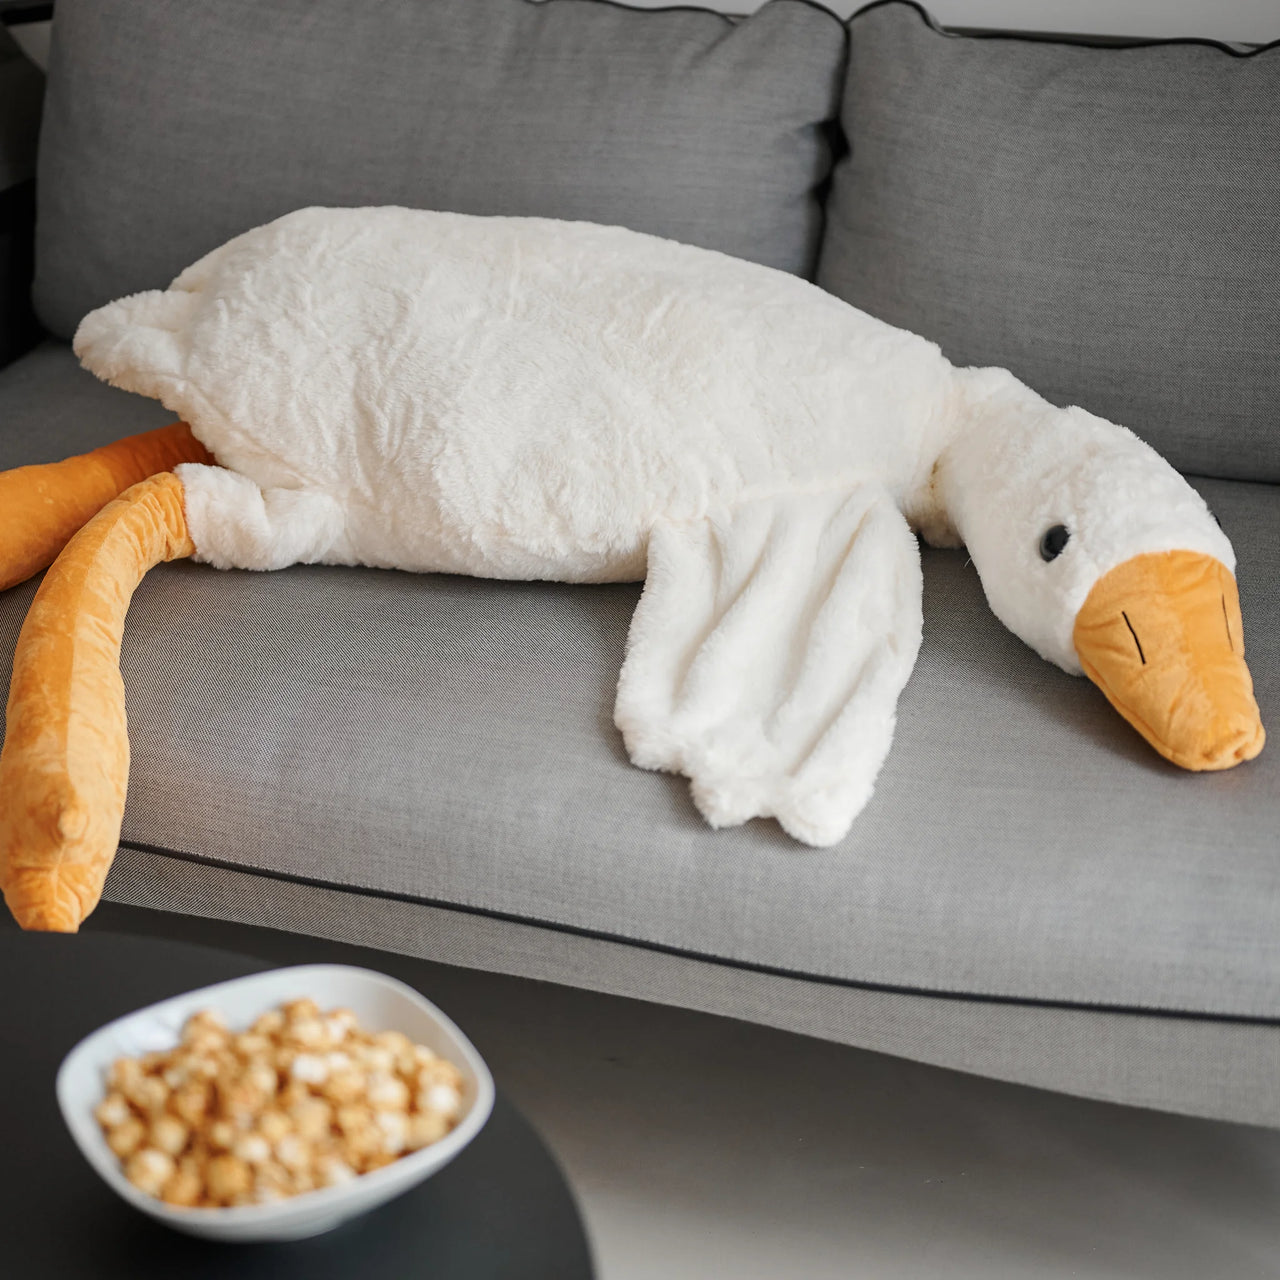 Devache Ursula The Giant Stuffed Animal Goose Curious Goose Plush Pillow White